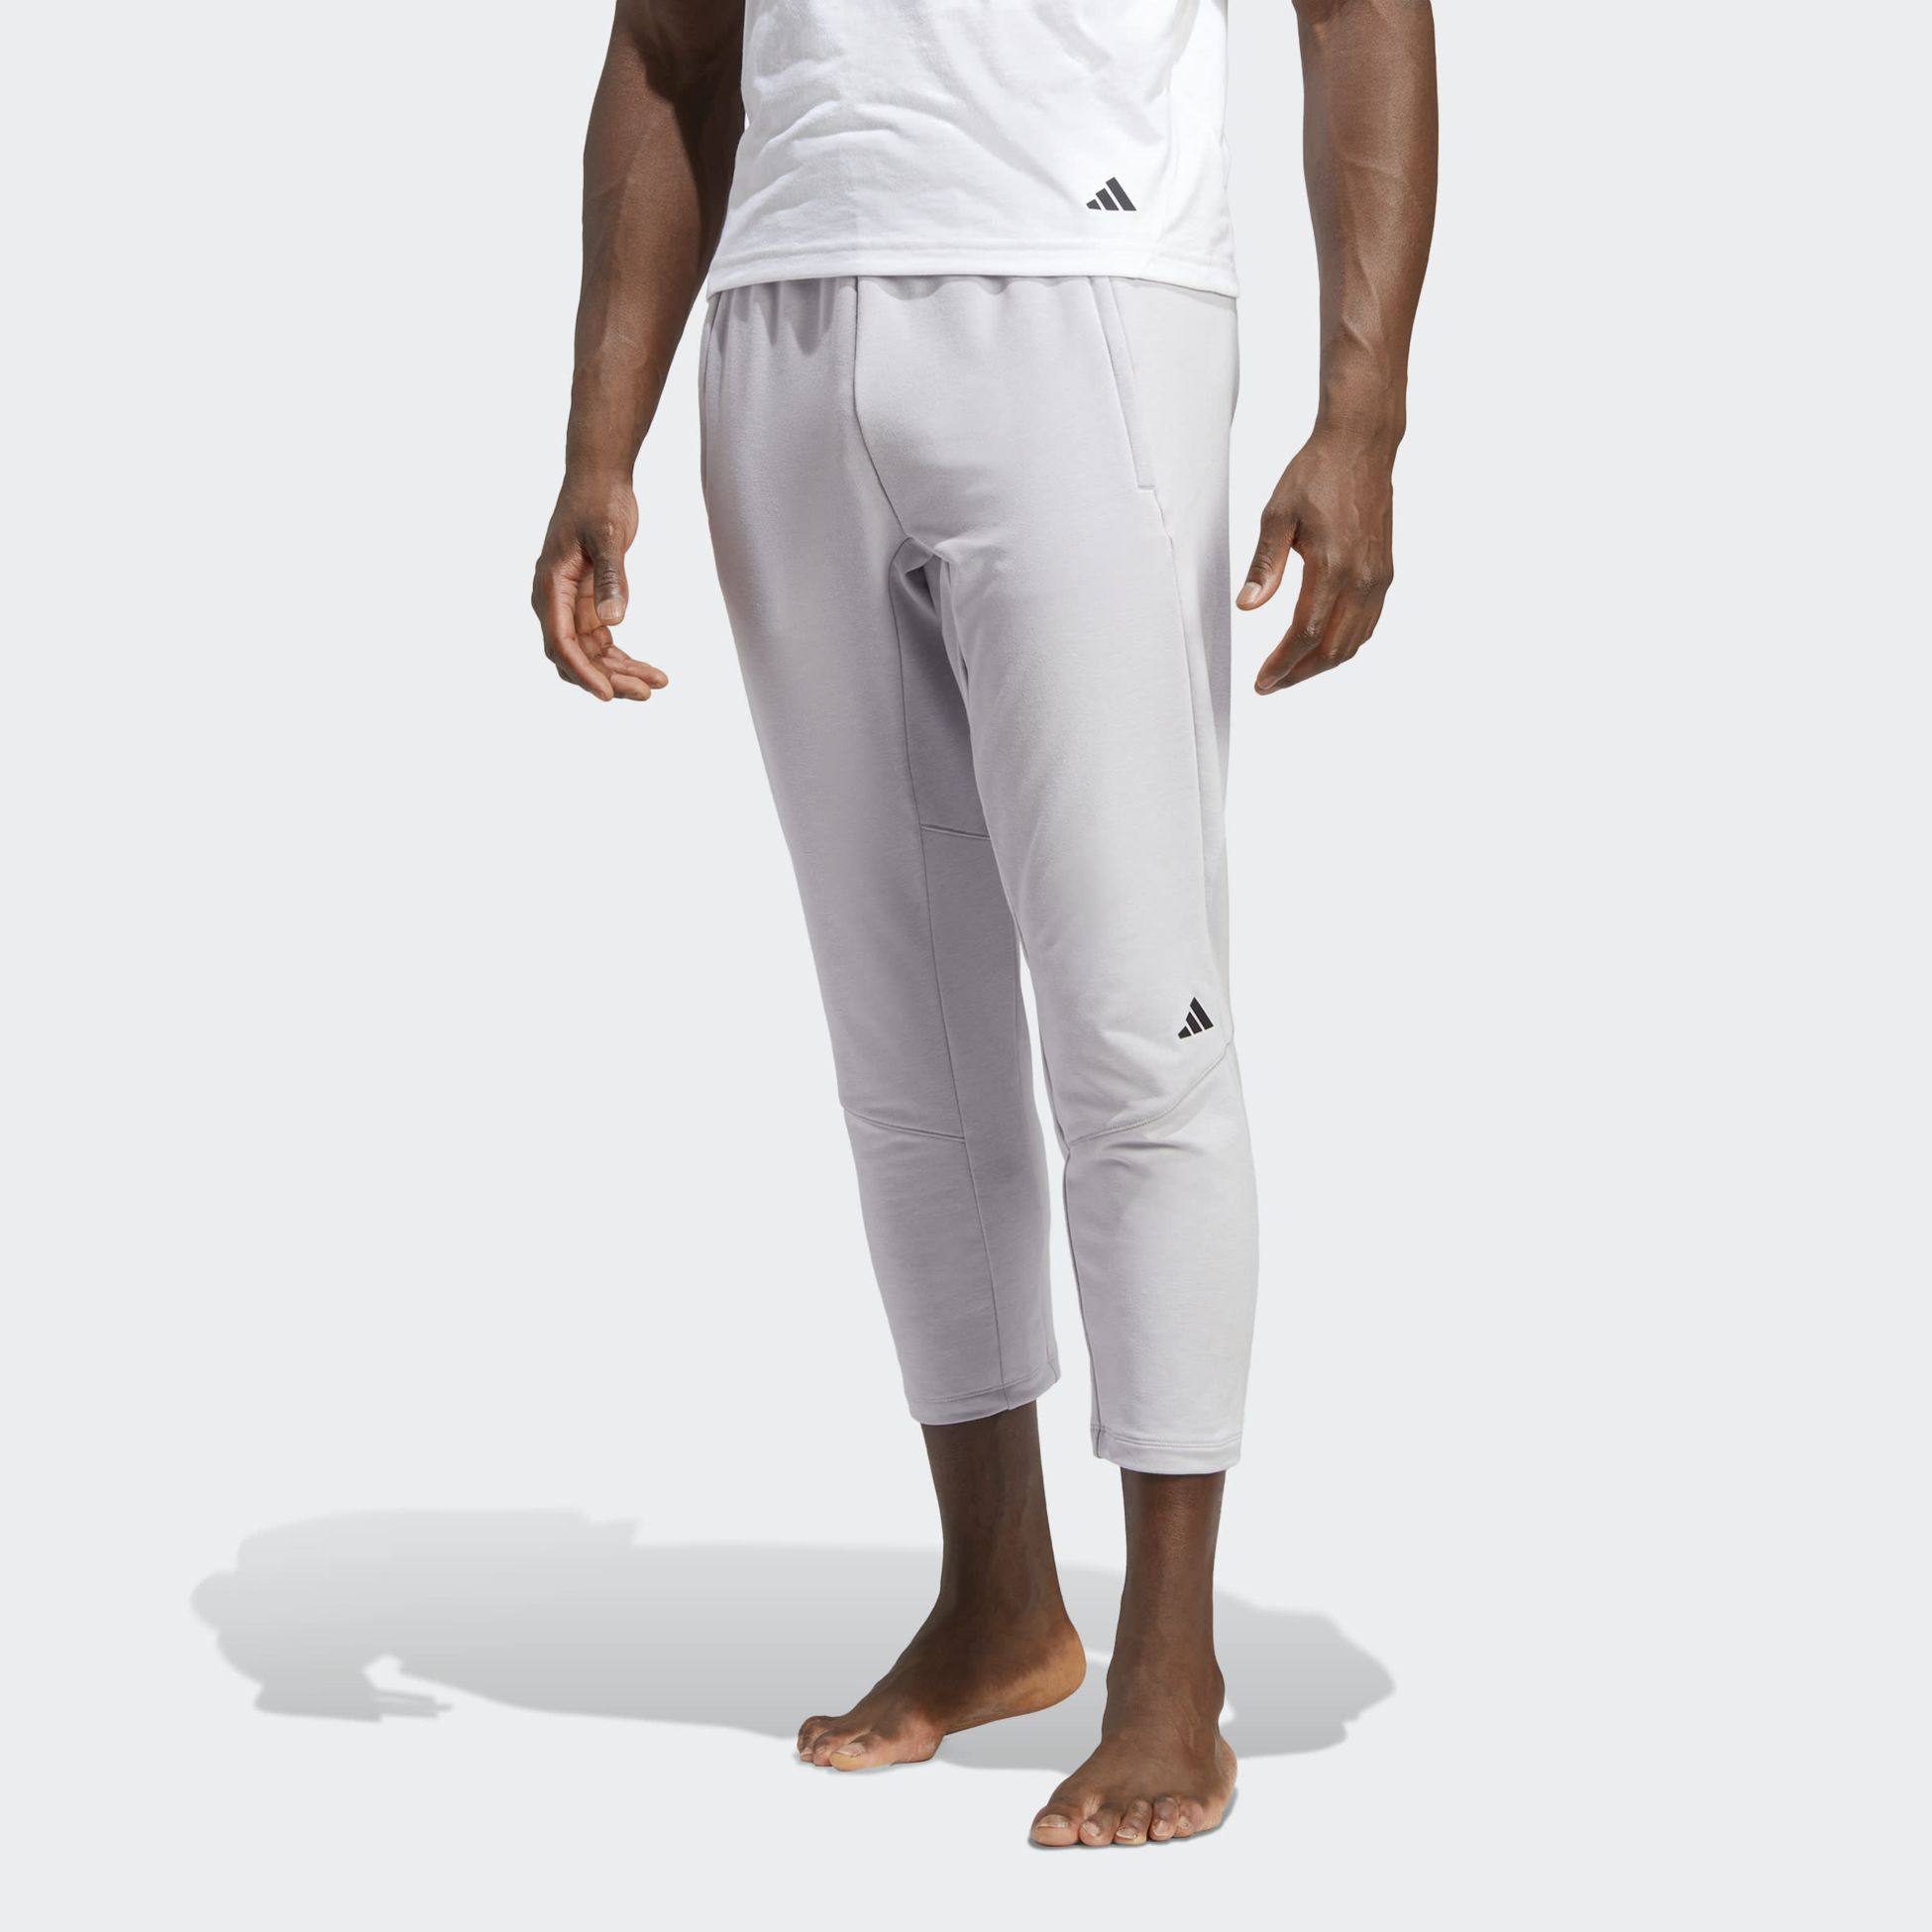 ADIDAS, Designed for Training Yoga 7/8 Training Pants